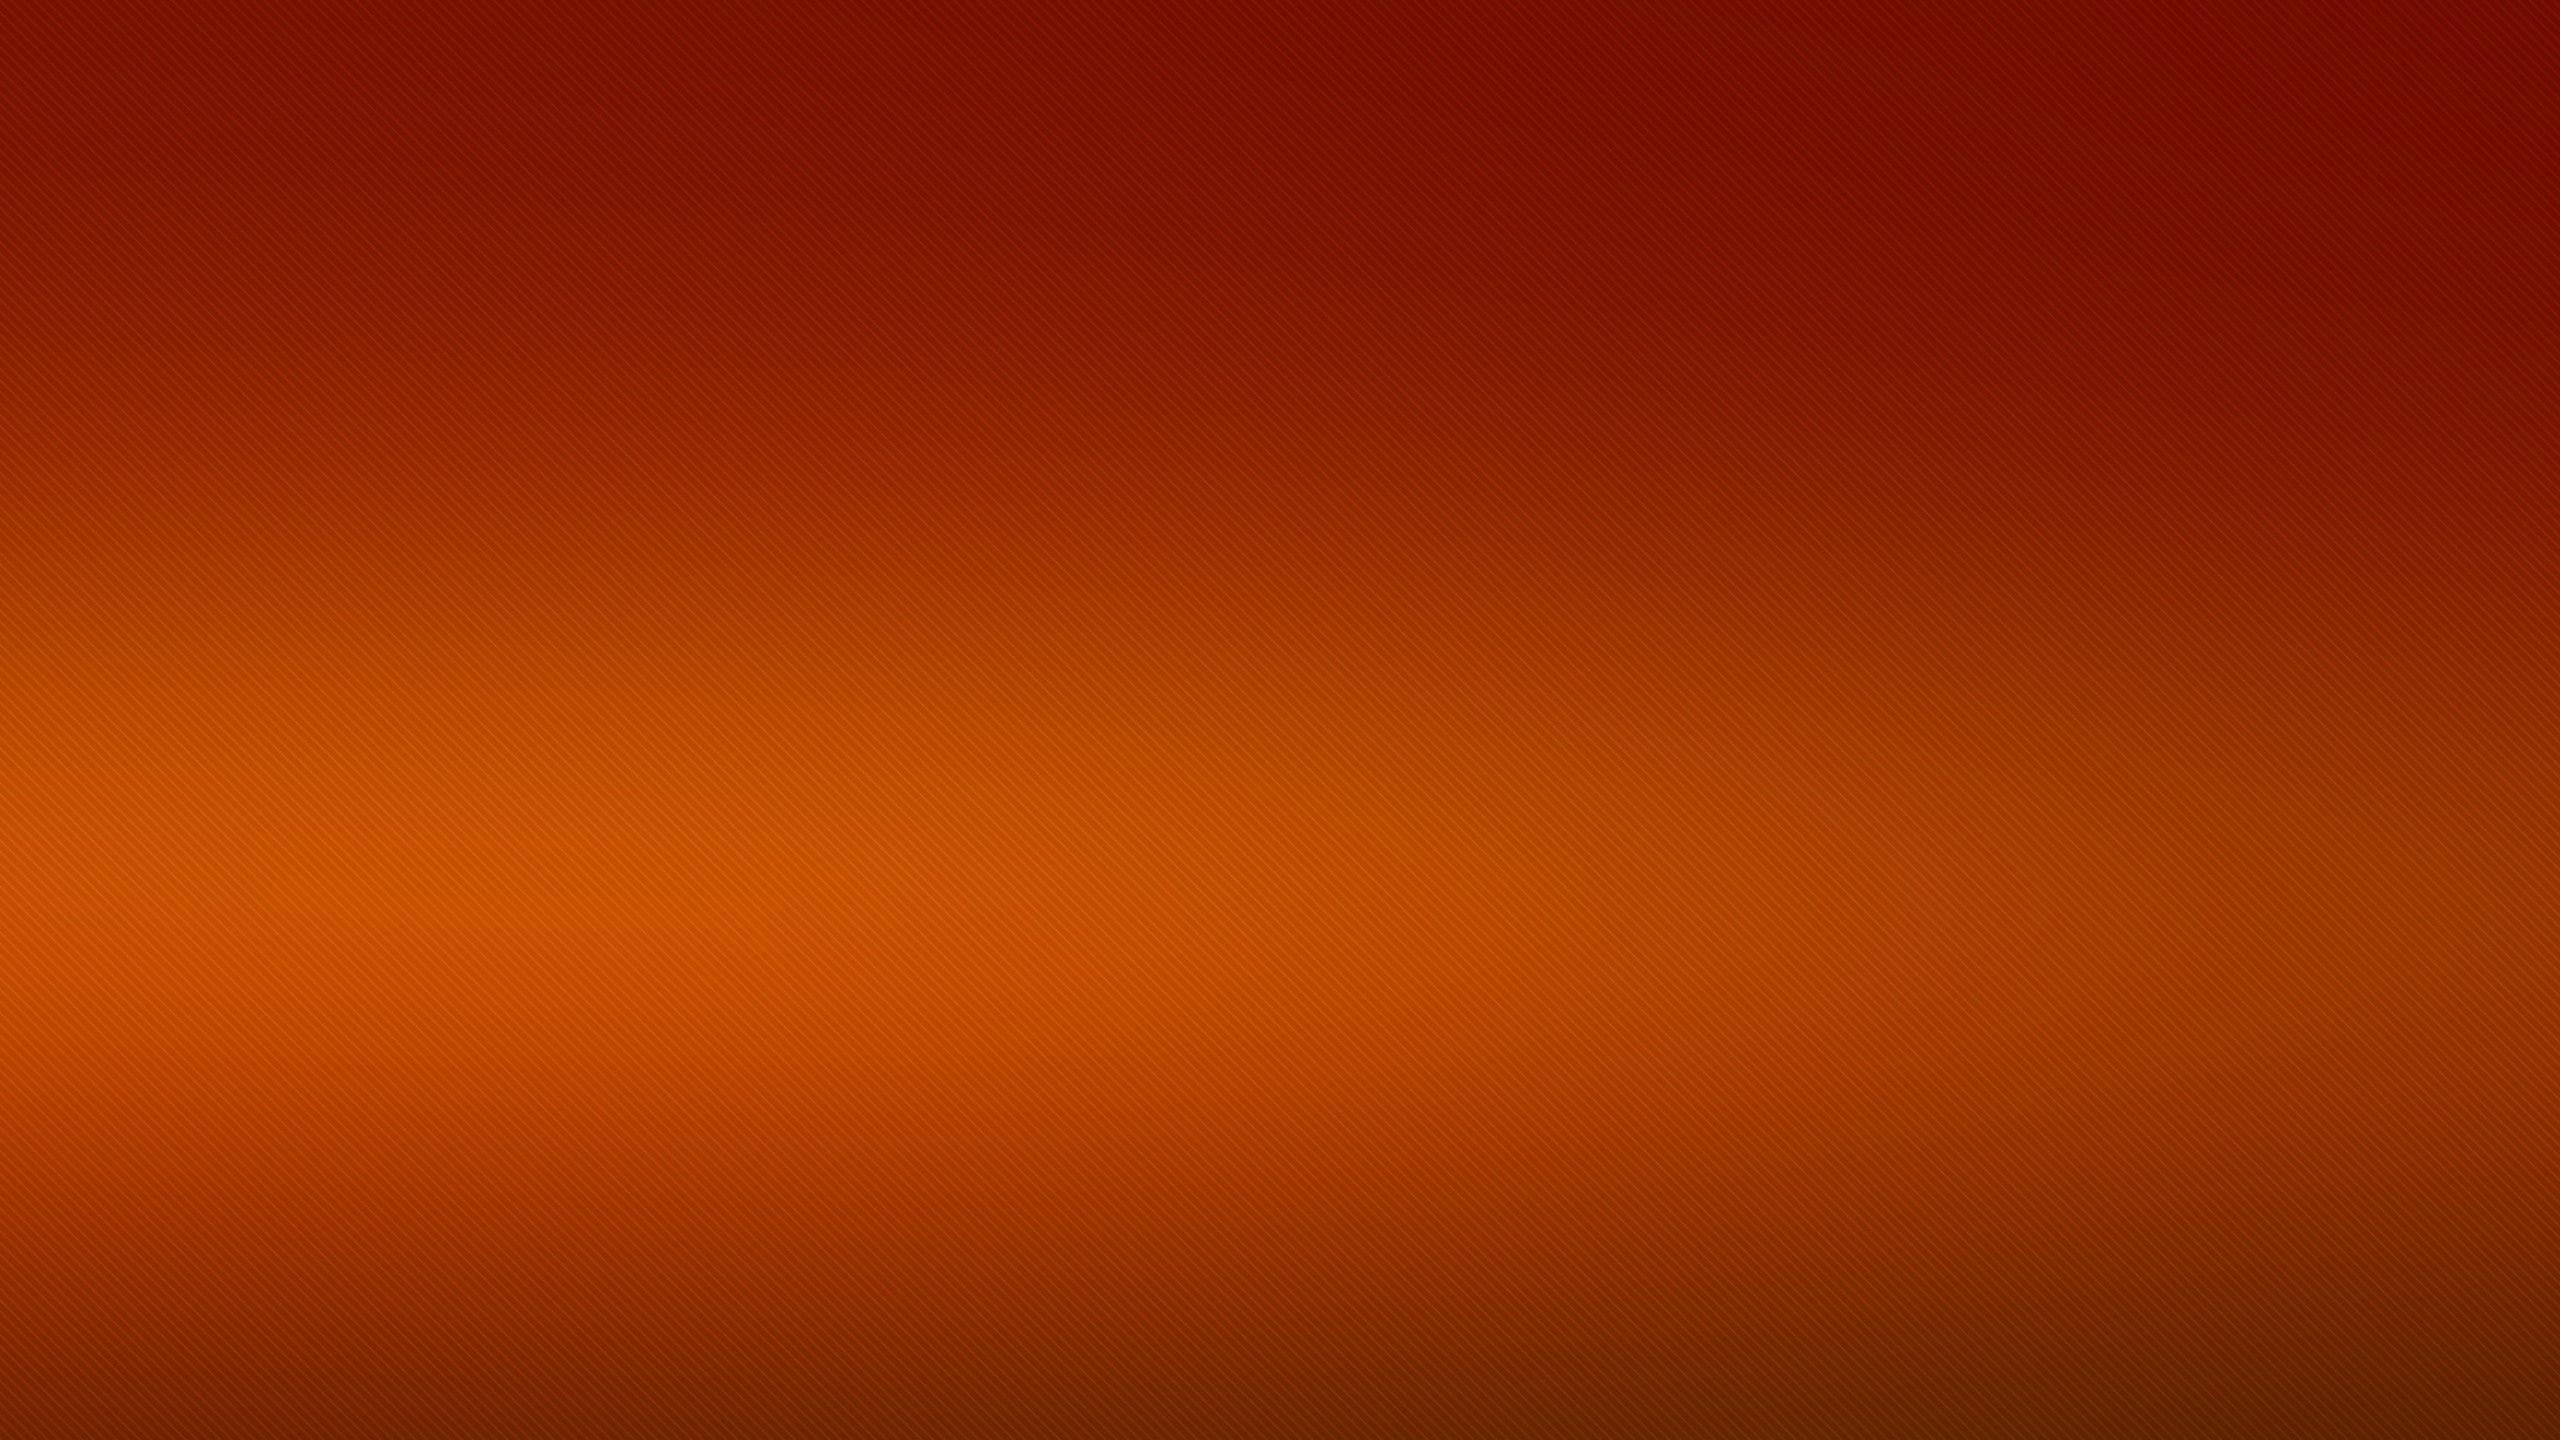 Free Desktop Solid Color Background